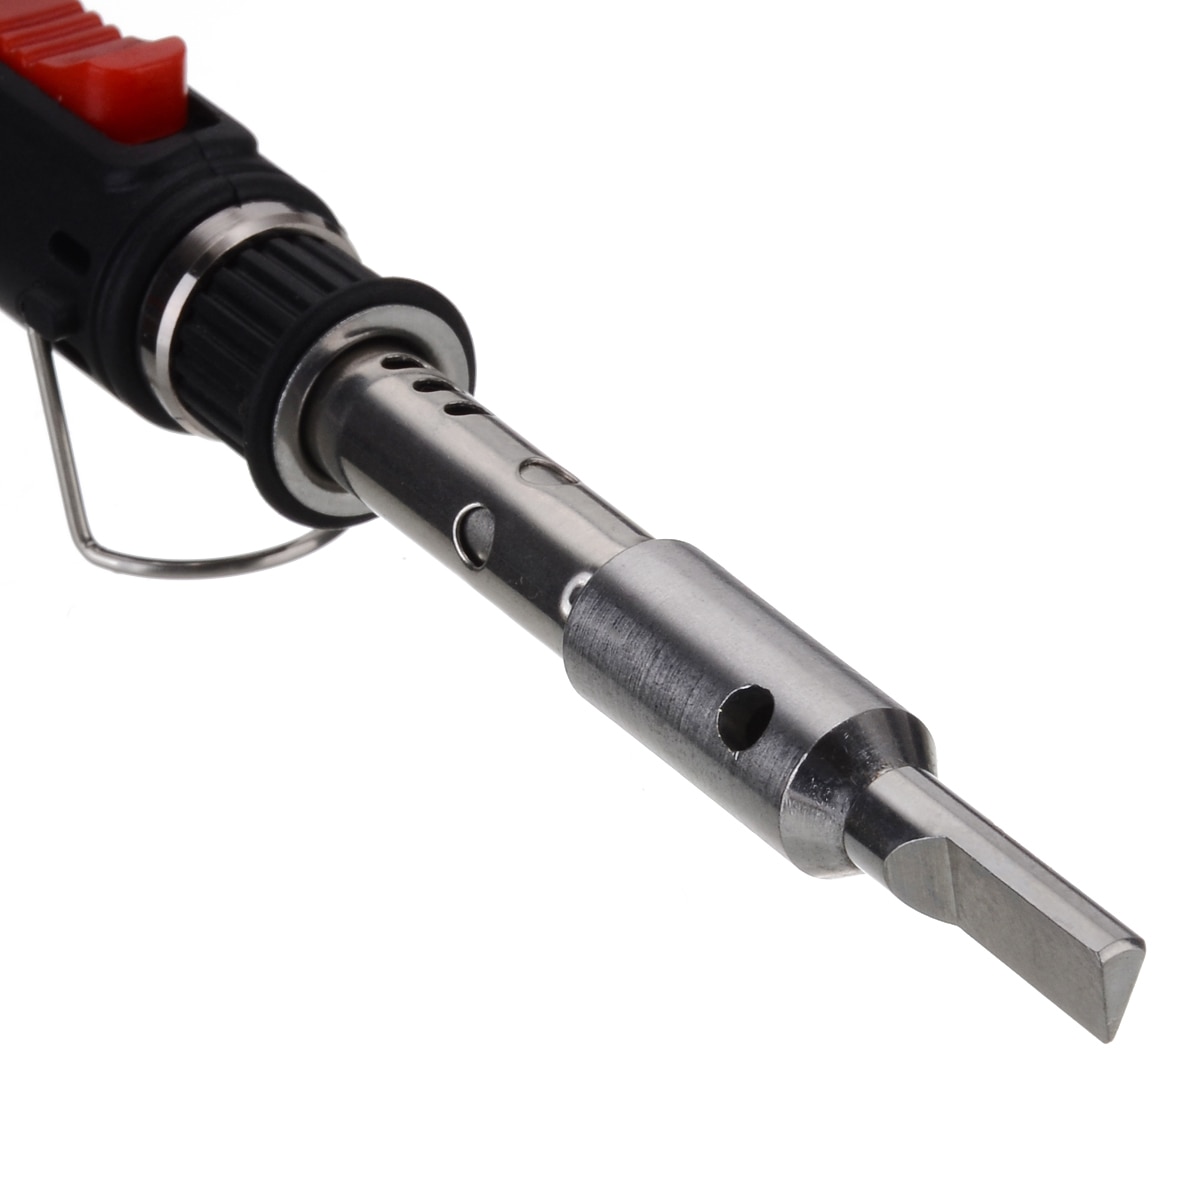 Portable Cordless Flame Butane Tip Tool 4 in 1 Gas Soldering Iron Kit Welding Pen Burner 12ML Welding Soldering Kit